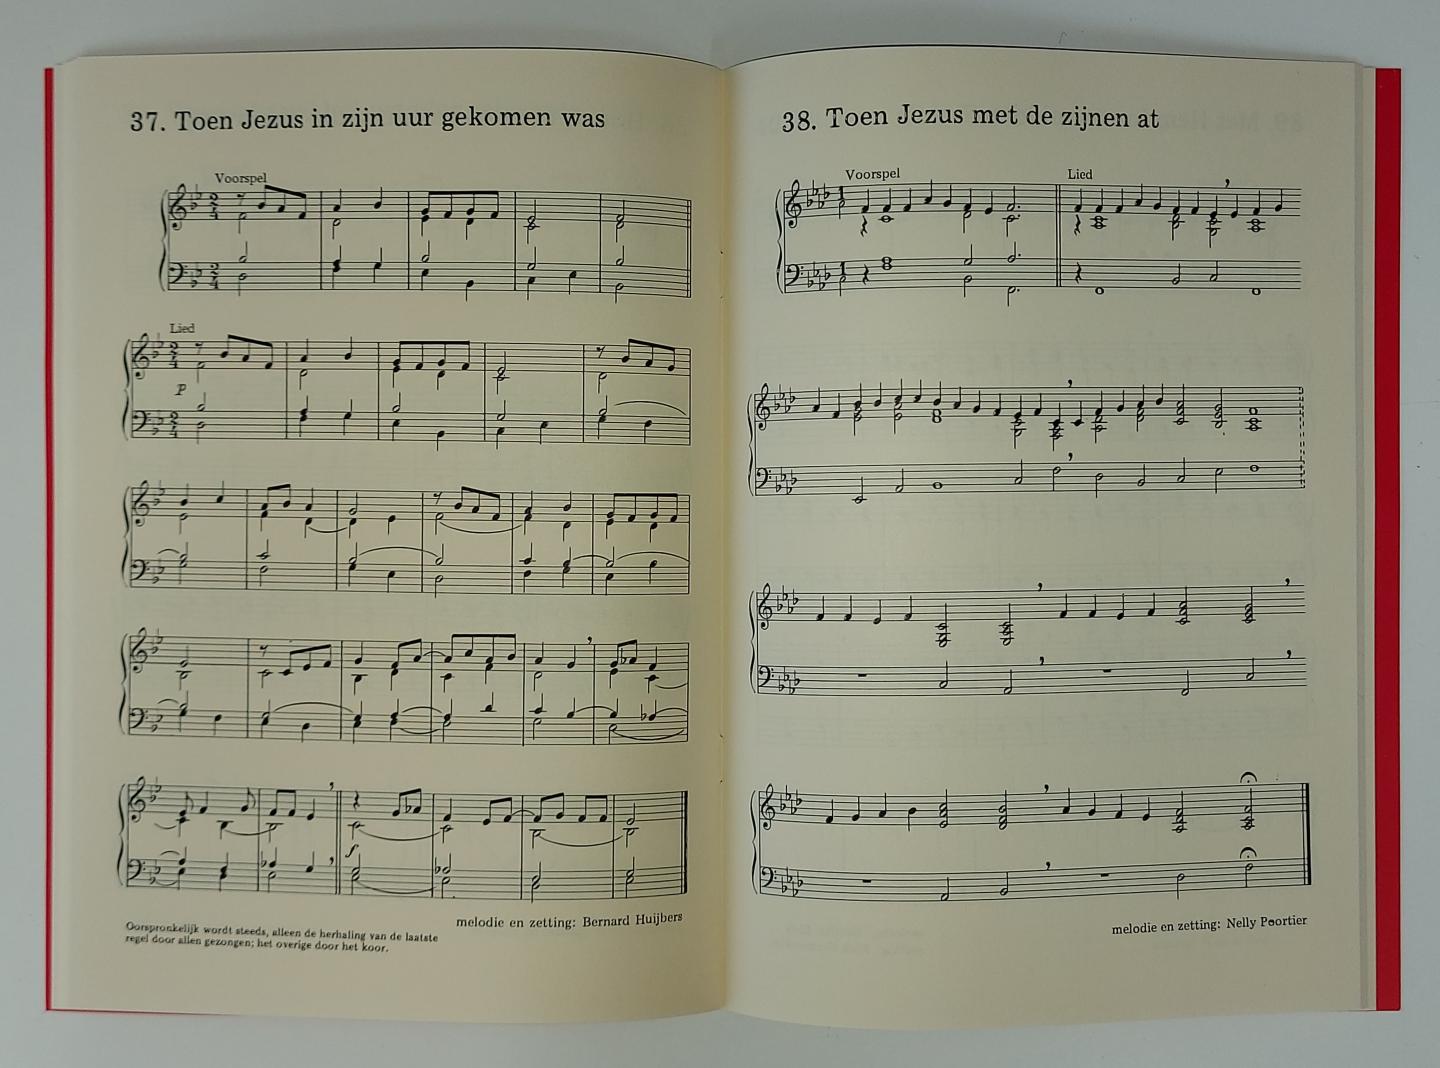  - Zingend geloven - Orgel- en pianobegeleidingen met voorspelen voor de tijd voor Pasen